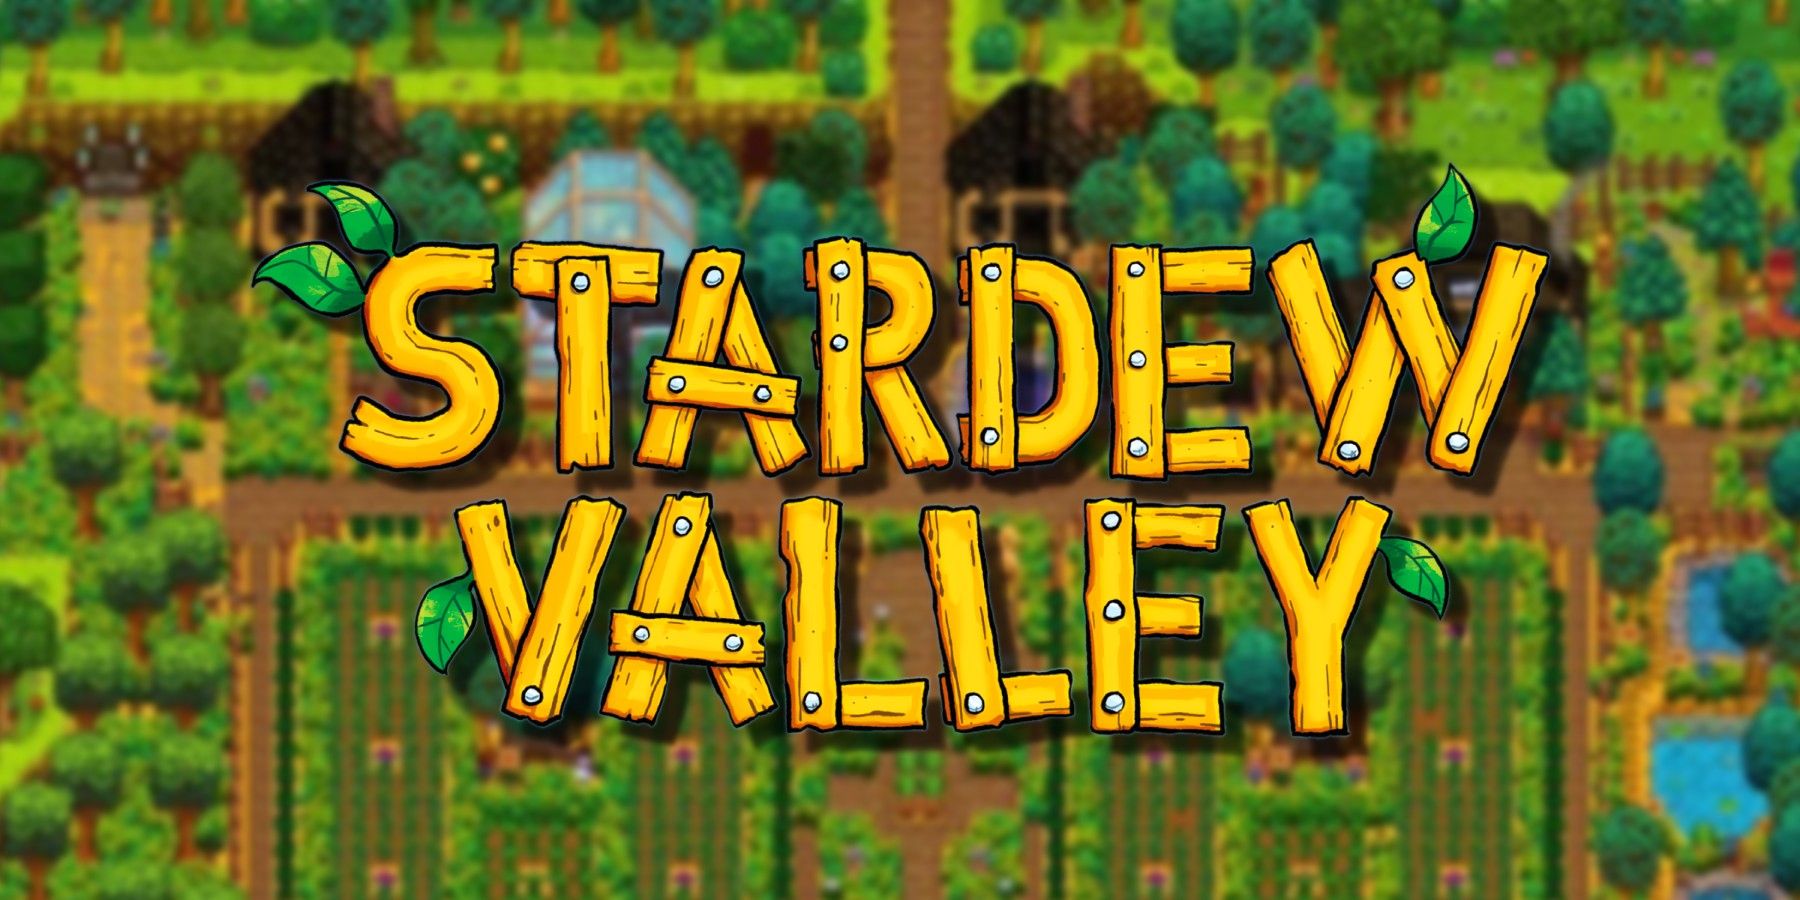 stardew-valley-logo-farm-blurred-background